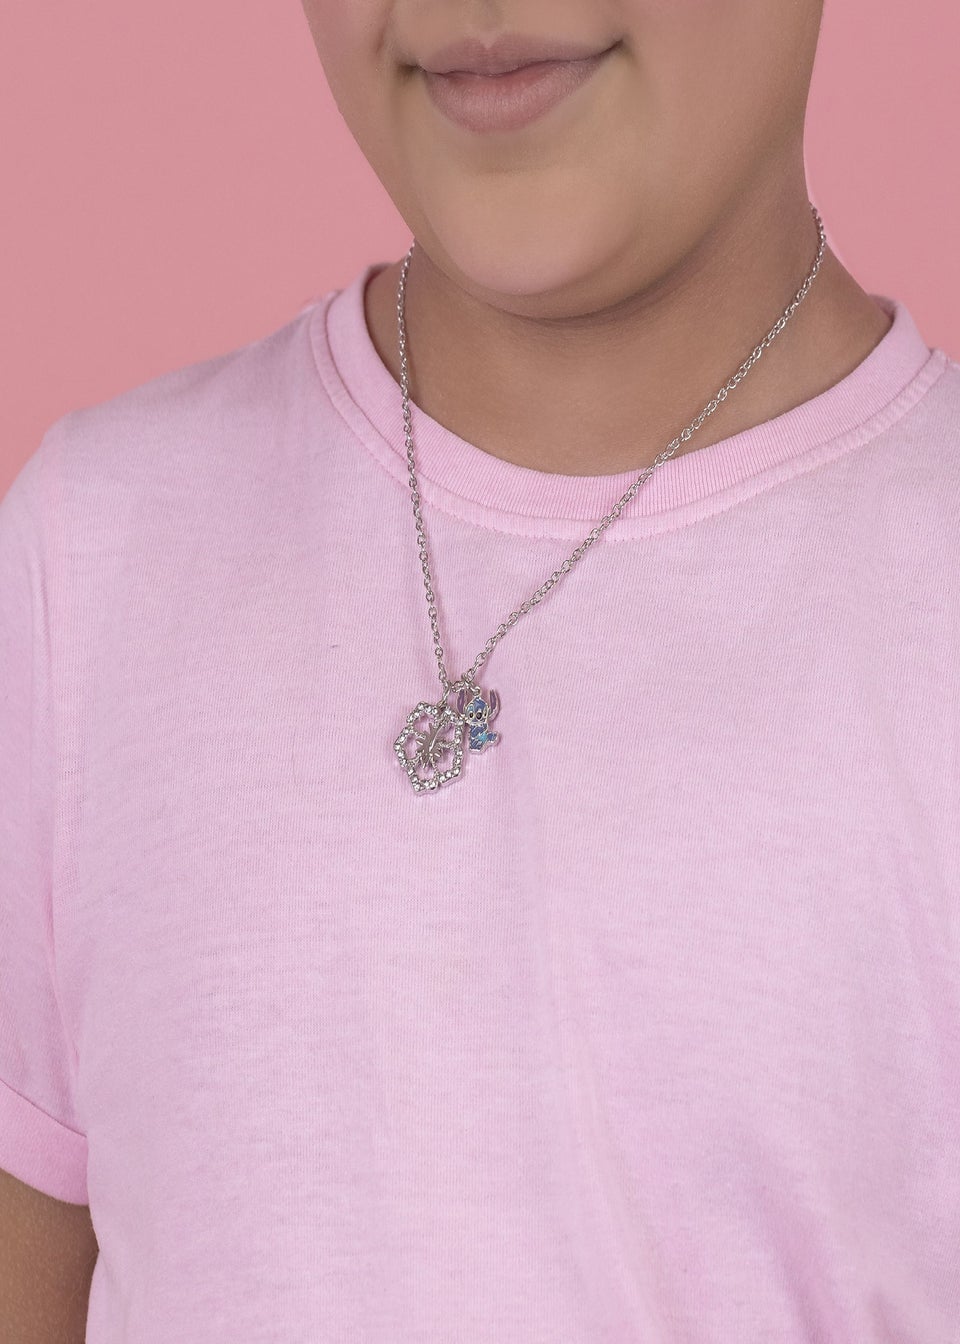 Disney Lilo & Stitch Silver Flower Charm Necklace